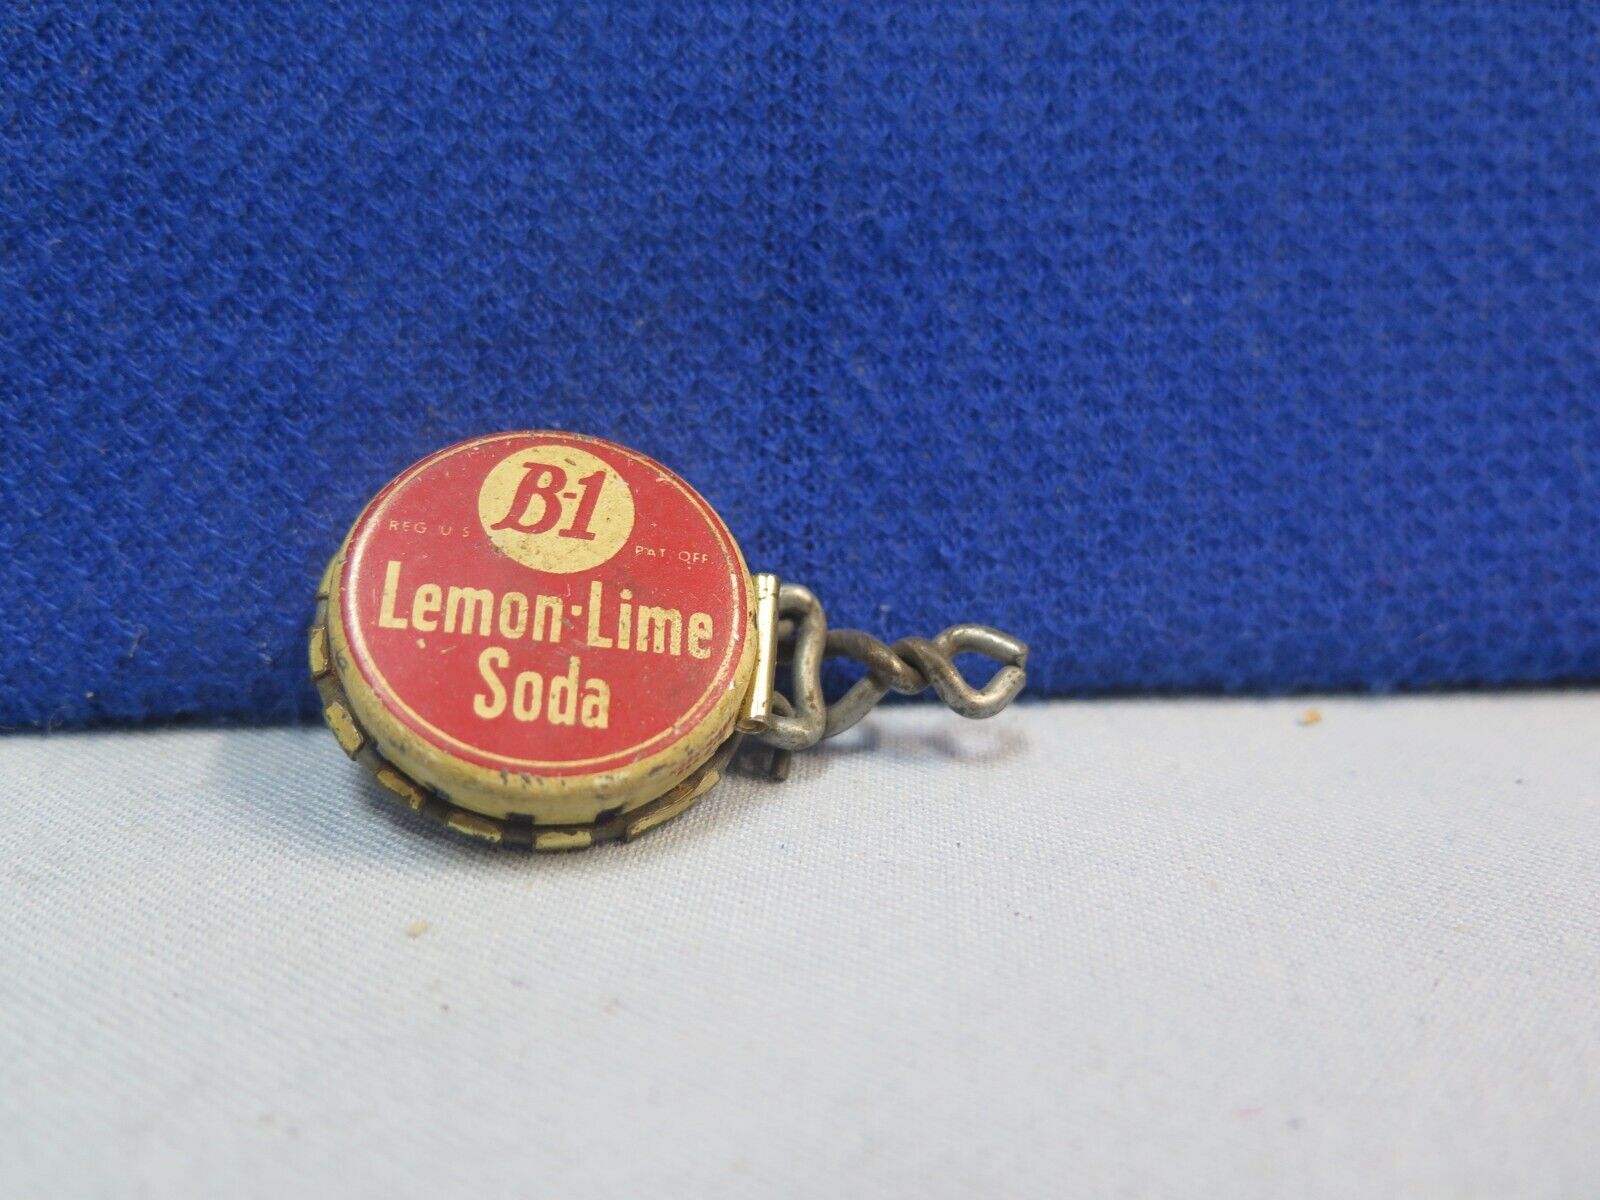 ANTIQUE B-1 LEMON LIME SODA BOTTLE CAP, RECLOSES...